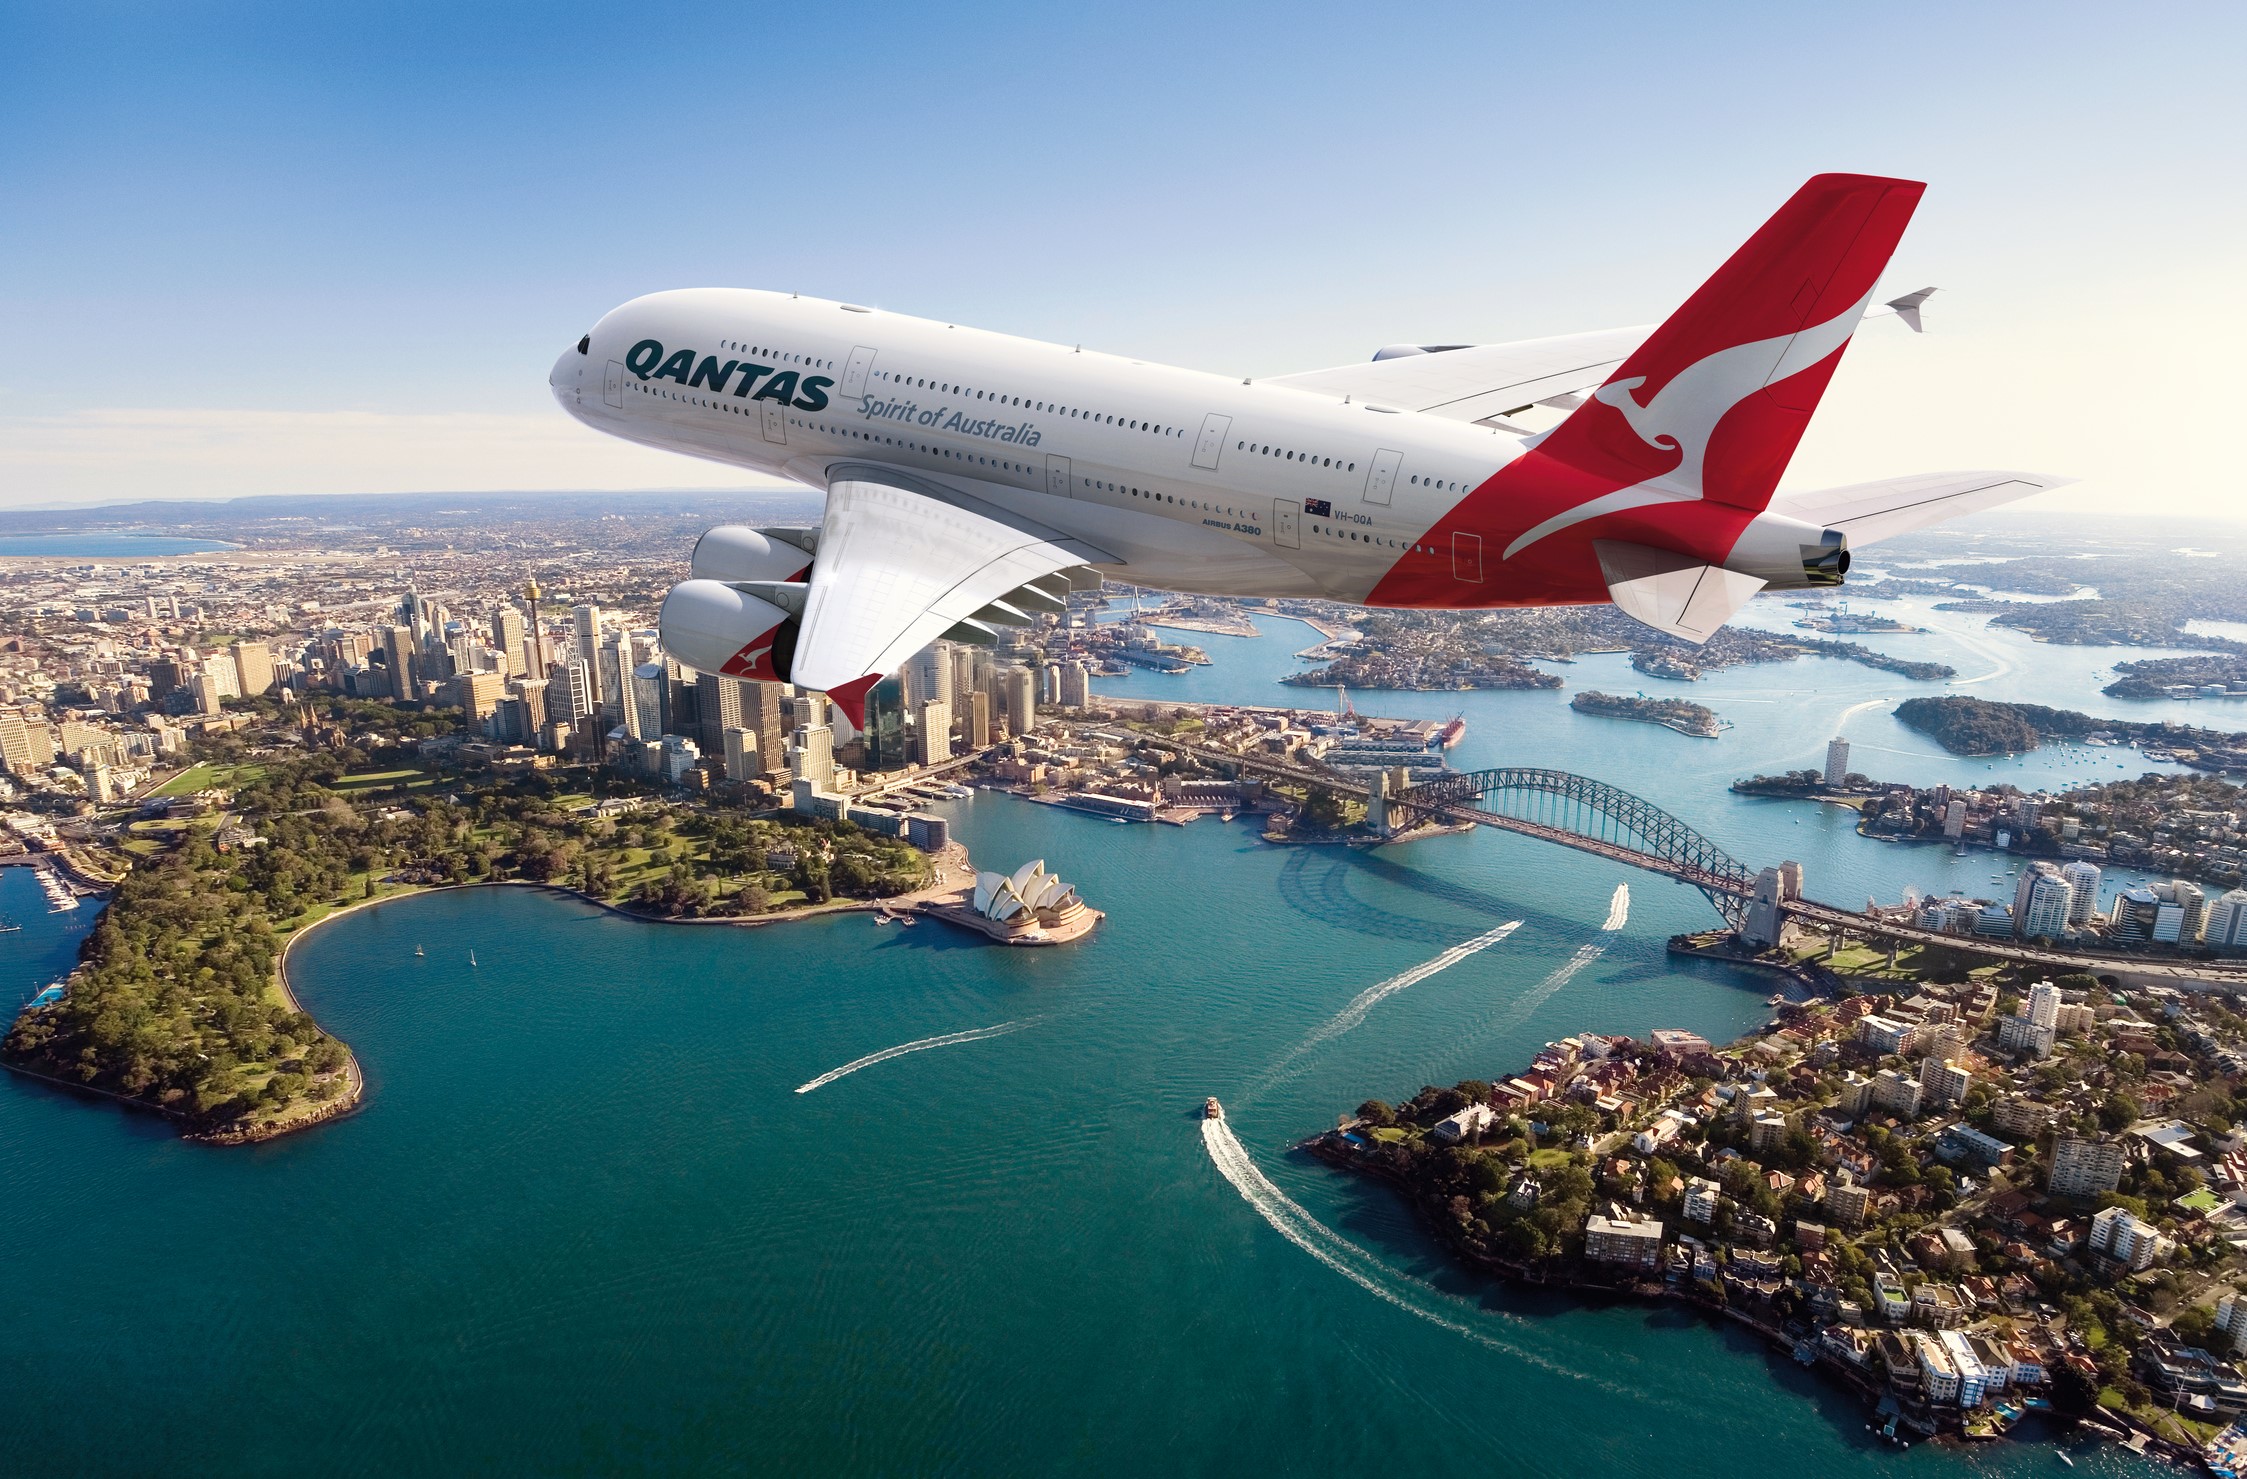 Авиатранспорт. Квантас авиакомпания австралийская. Qantas Airlines Австралия. Самолет Qantas Airways. Airbus a380.